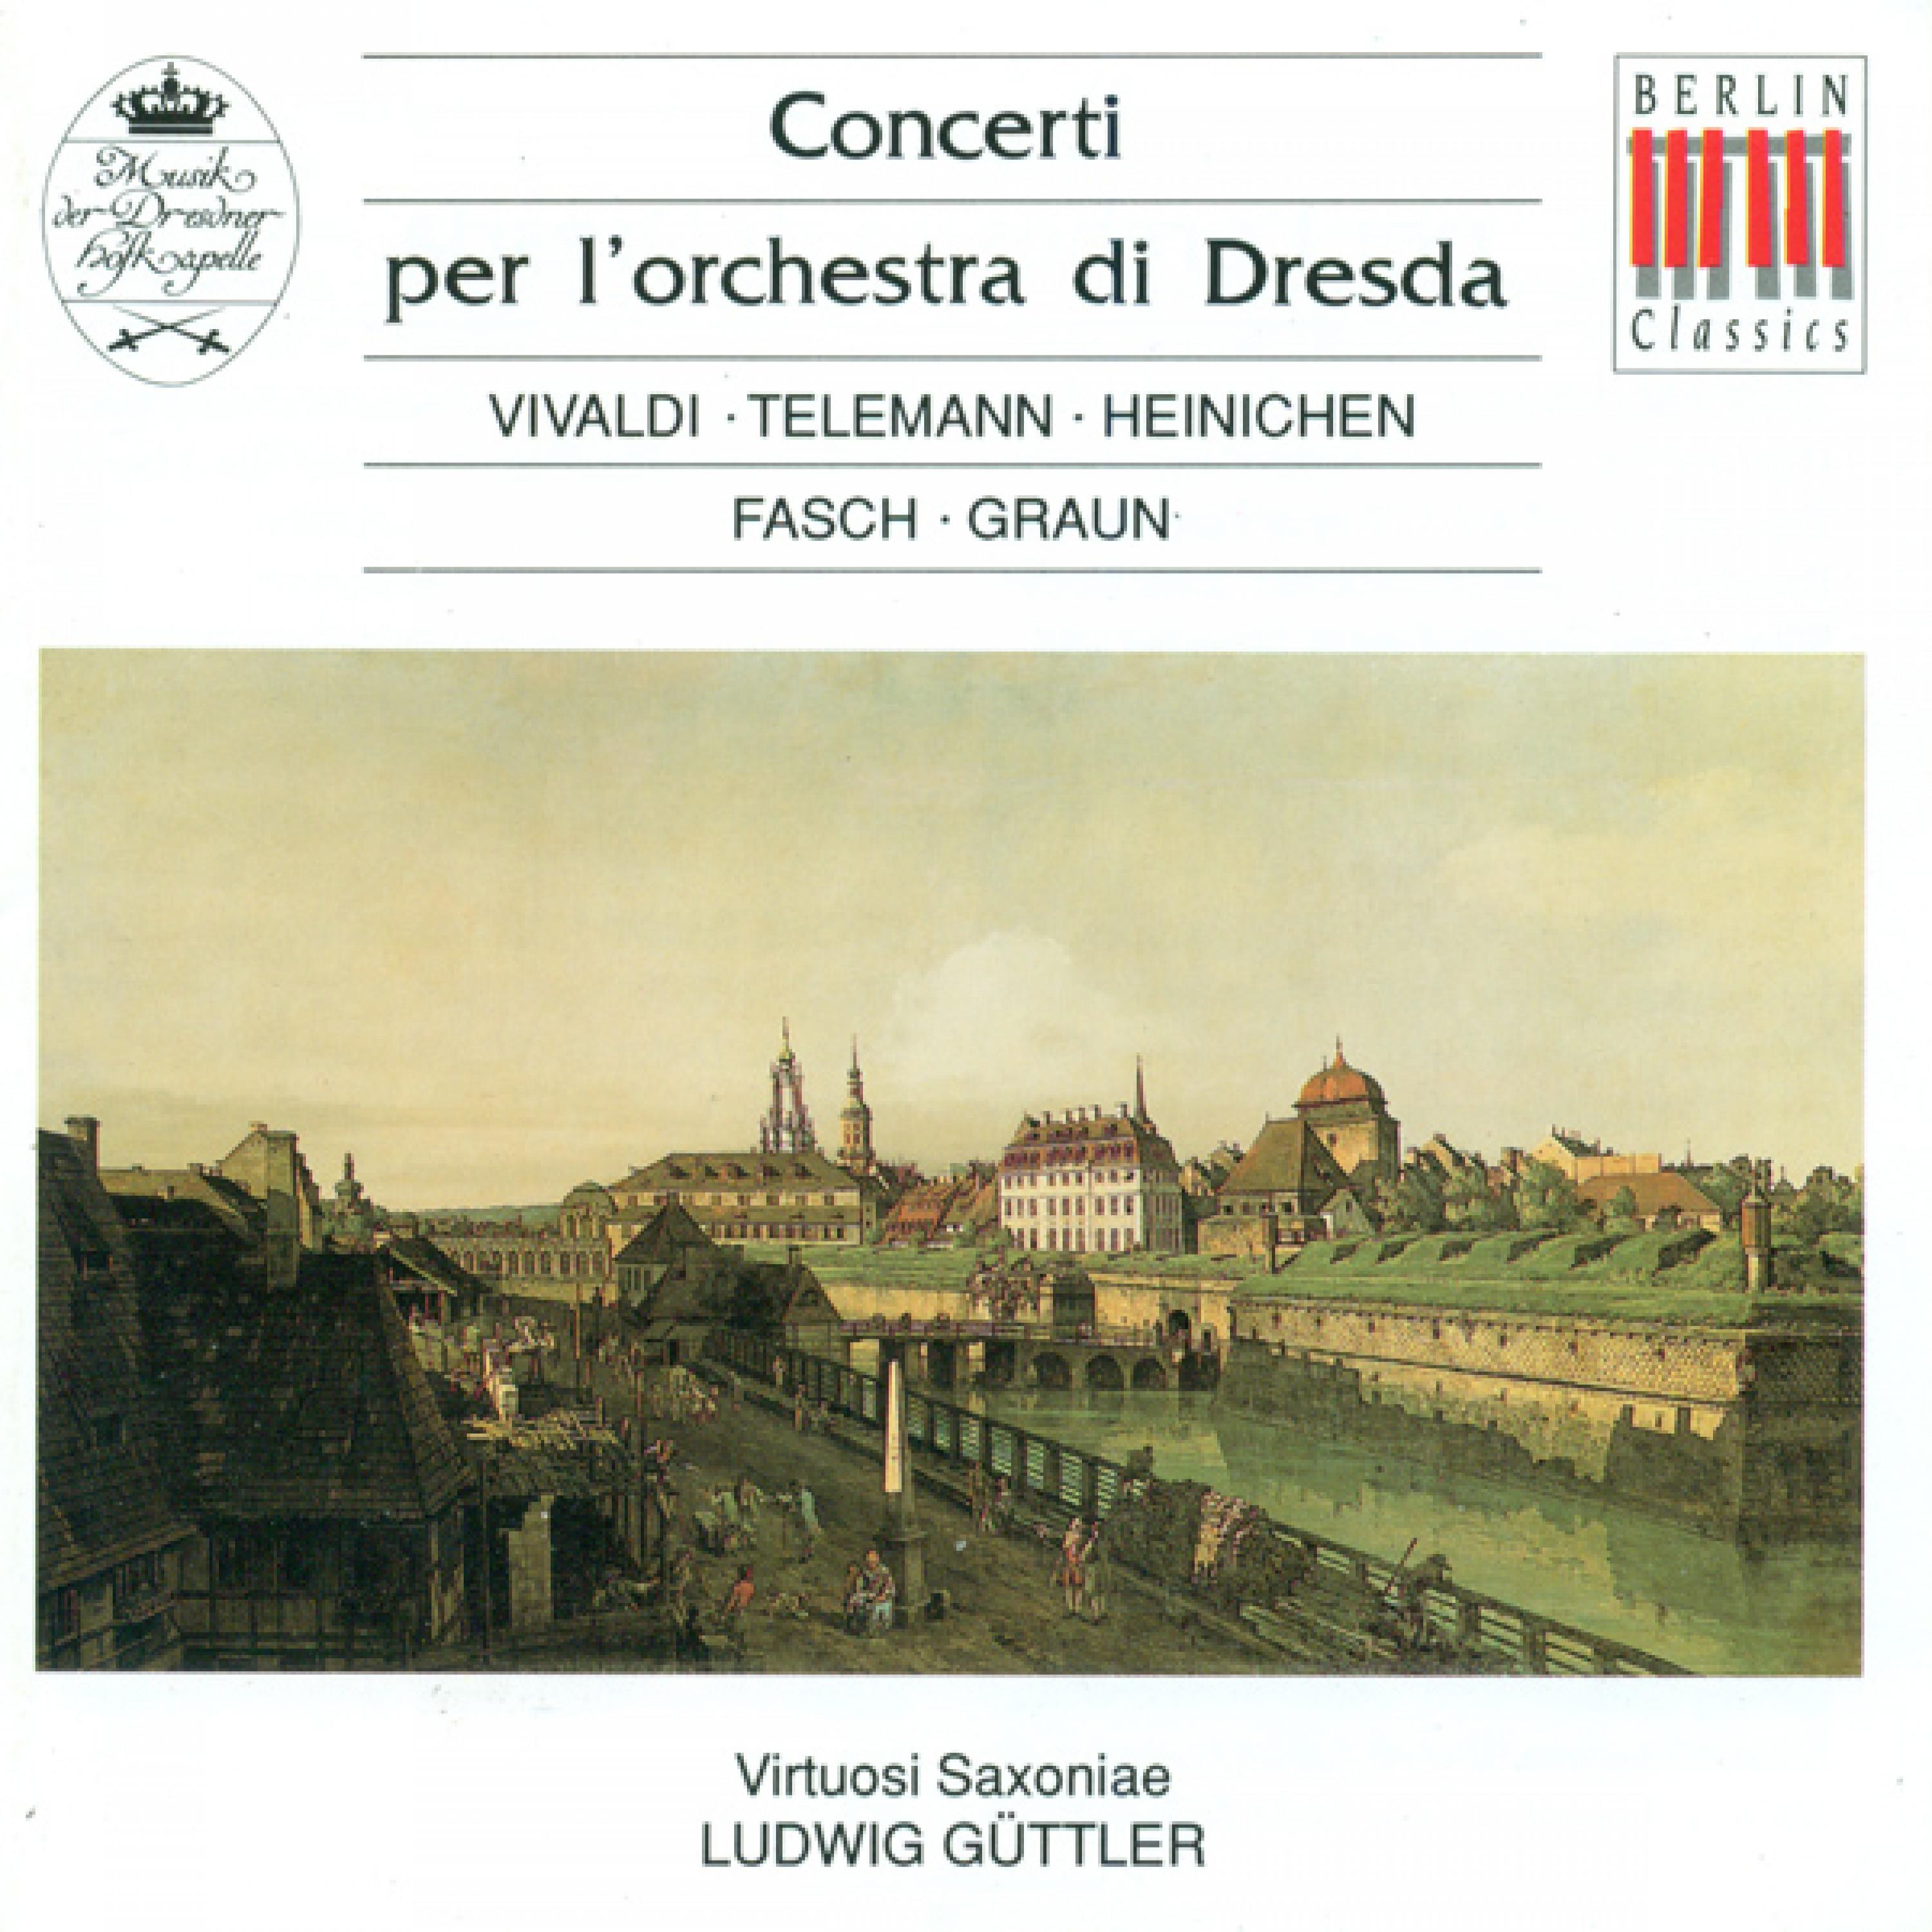 Concerto in G Minor, RV 577, " per l' orchestra di Dresda": I.